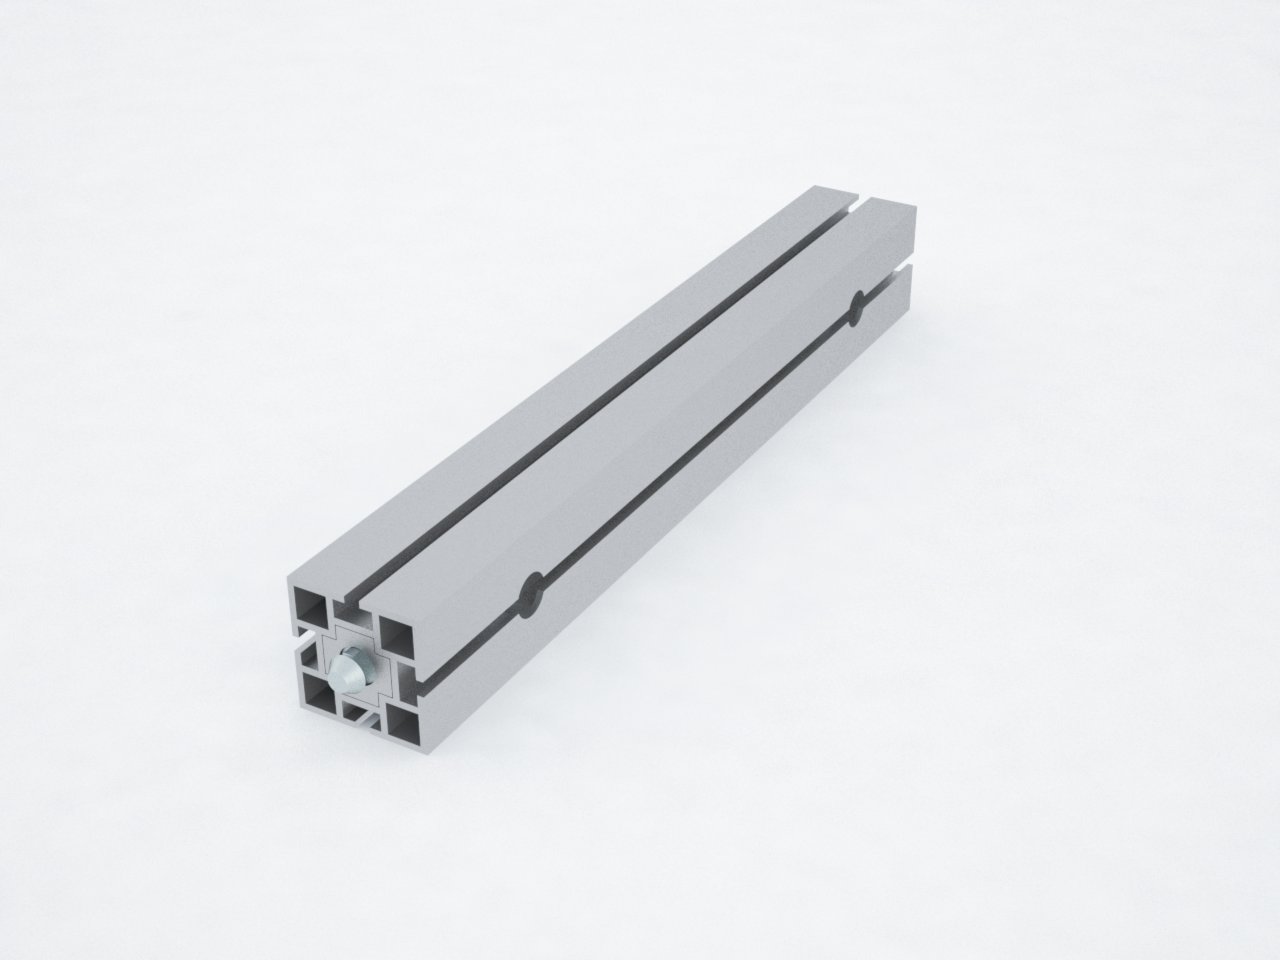 Detalhe do perfil de alumínio quadrado de 40mm para montagem de estruturas